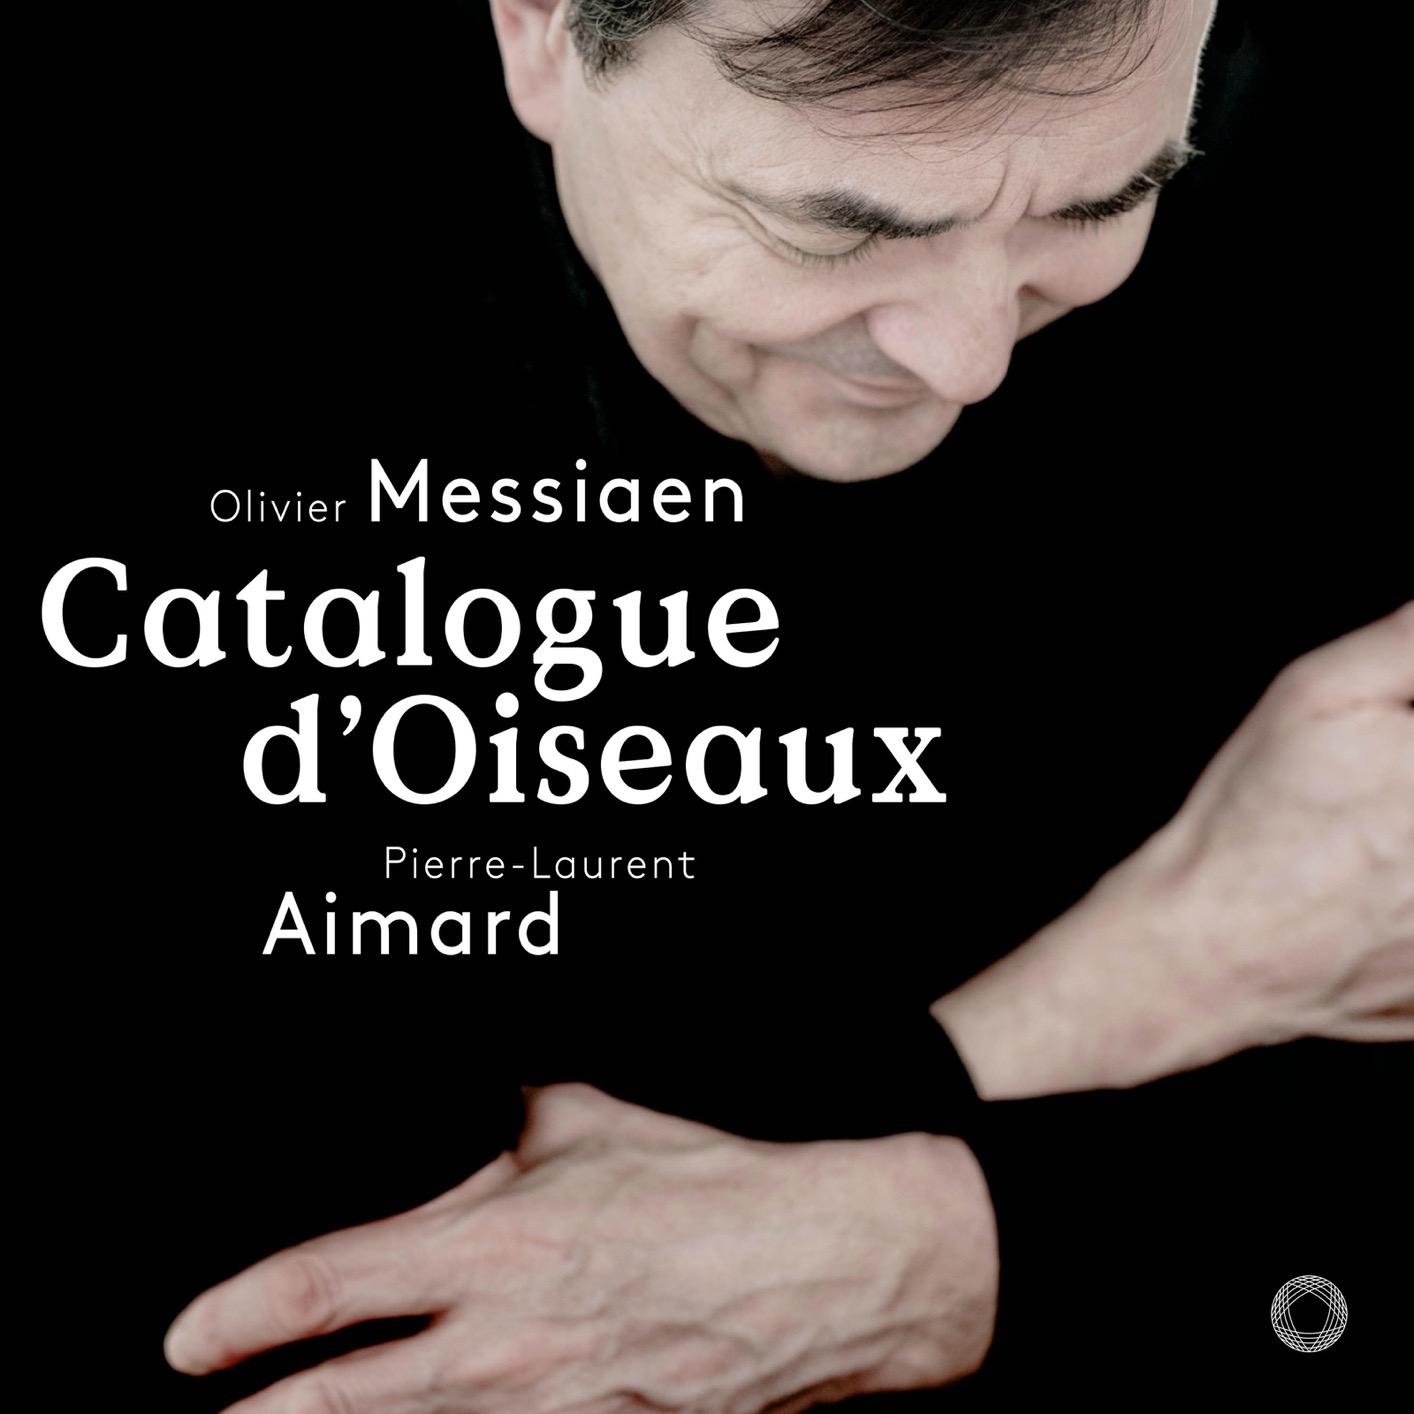 Pierre-Laurent Aimard - Messiaen: Catalogue d’oiseaux, I-42 (2018) [FLAC 24bit/96kHz]